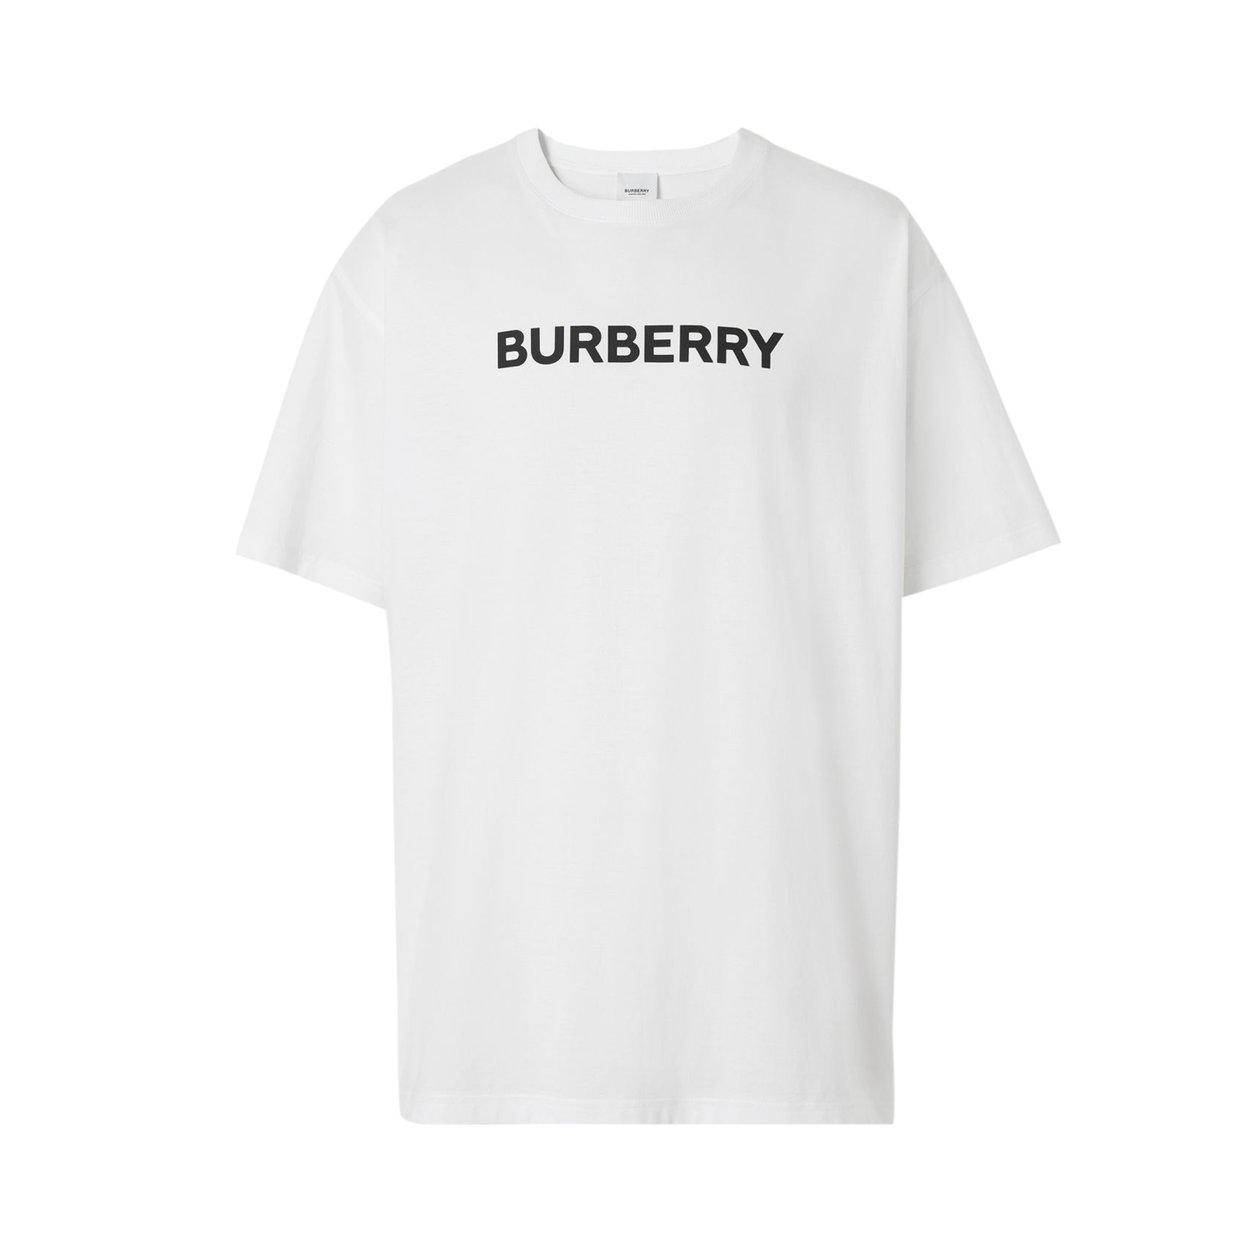 Buy Burberry Logo Print Oversized T-Shirt 'White' - 8055309 - White | GOAT